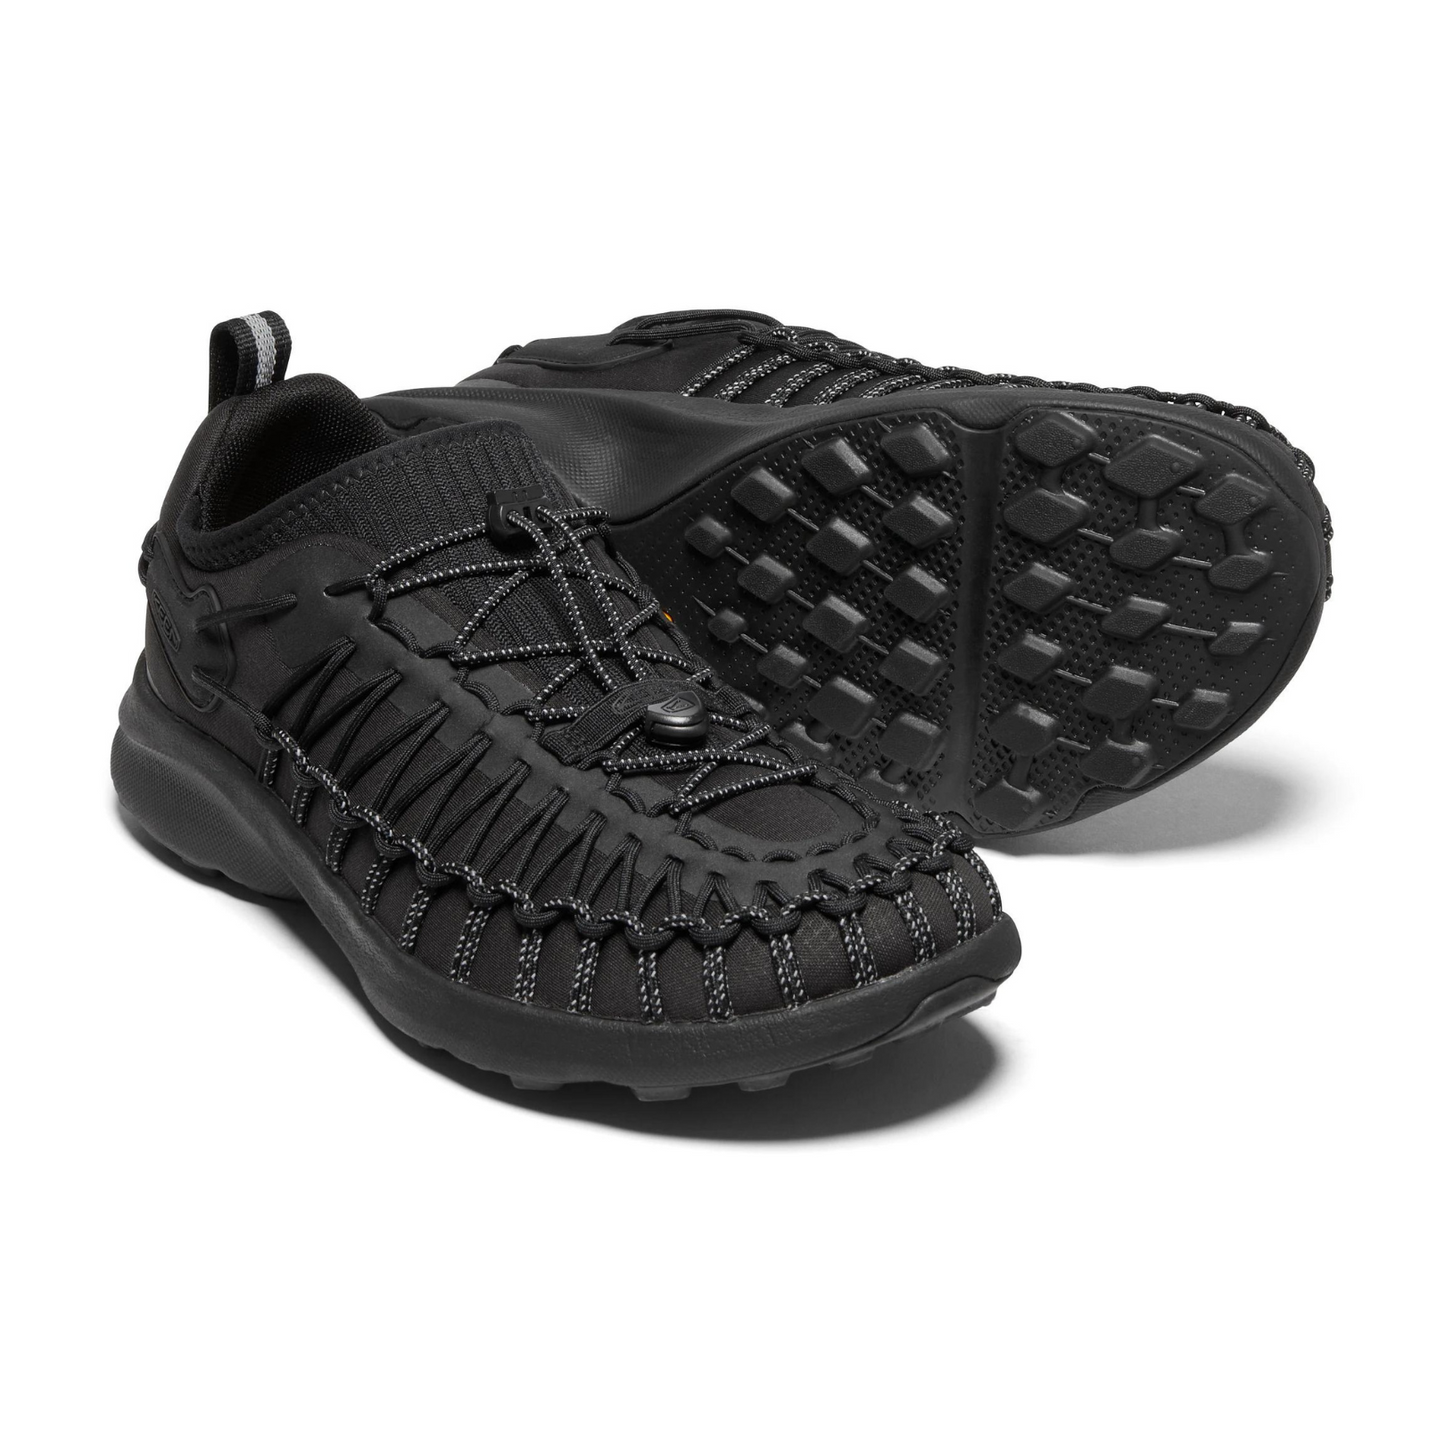 Zapatos Keen Uneek Sneaker Negros Hombre | Outdoor Adventure Colombia